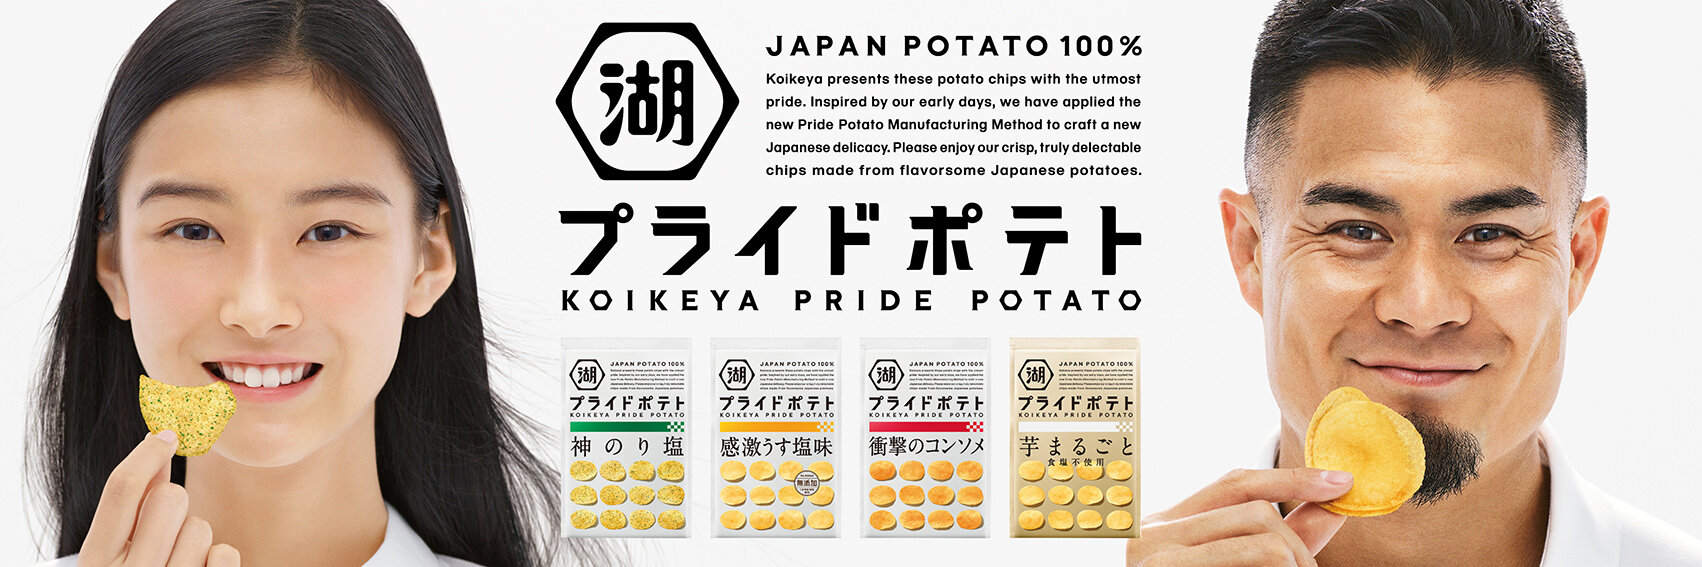 koikeya pride potato